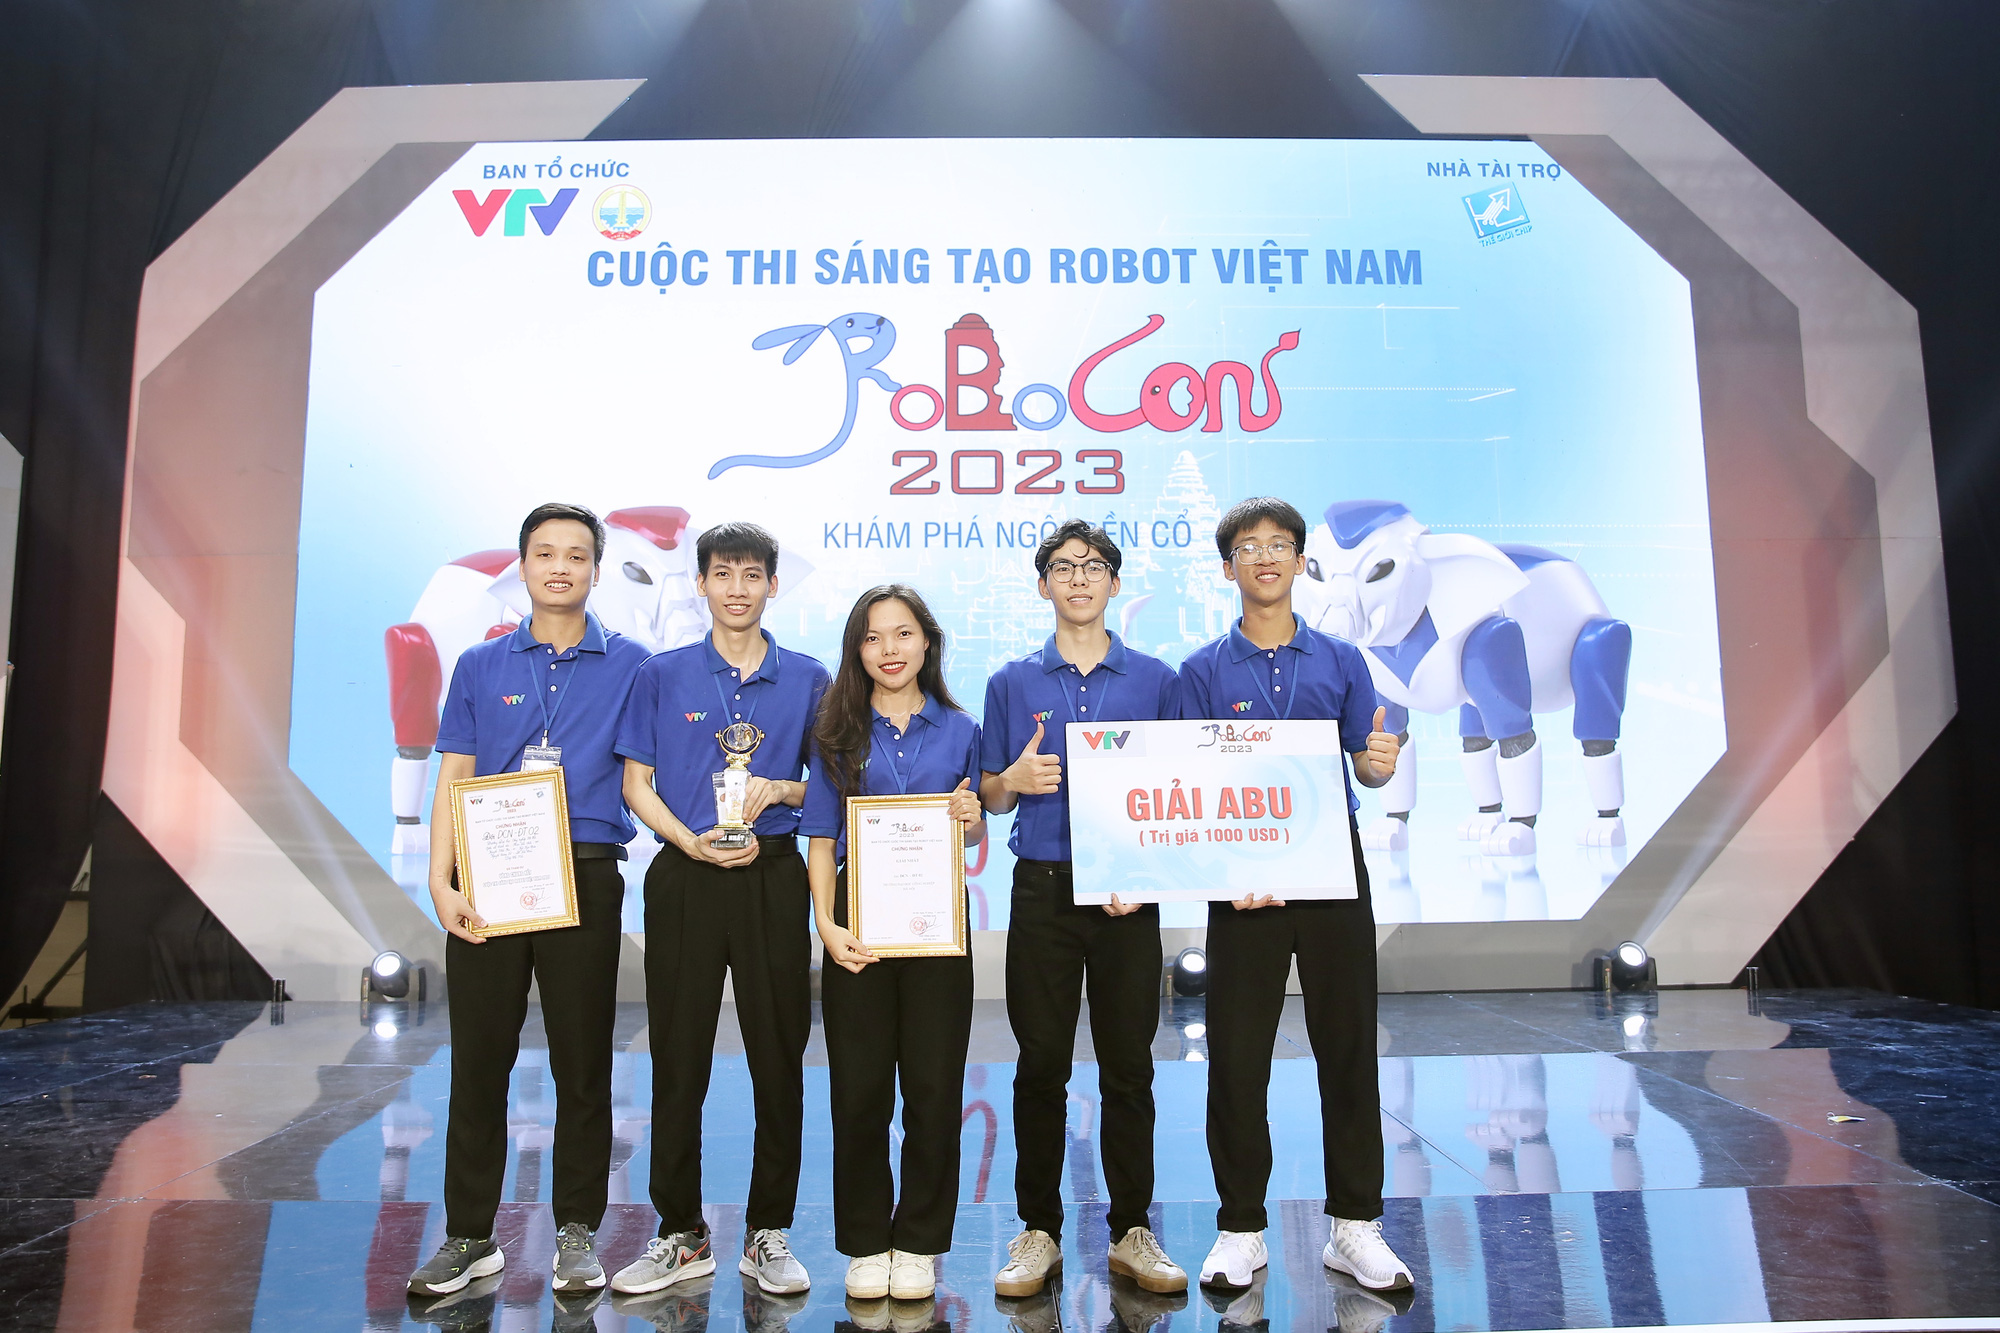 42 giây giành ngôi vô địch Robocon Việt Nam, kết thúc 15 năm chờ đợi